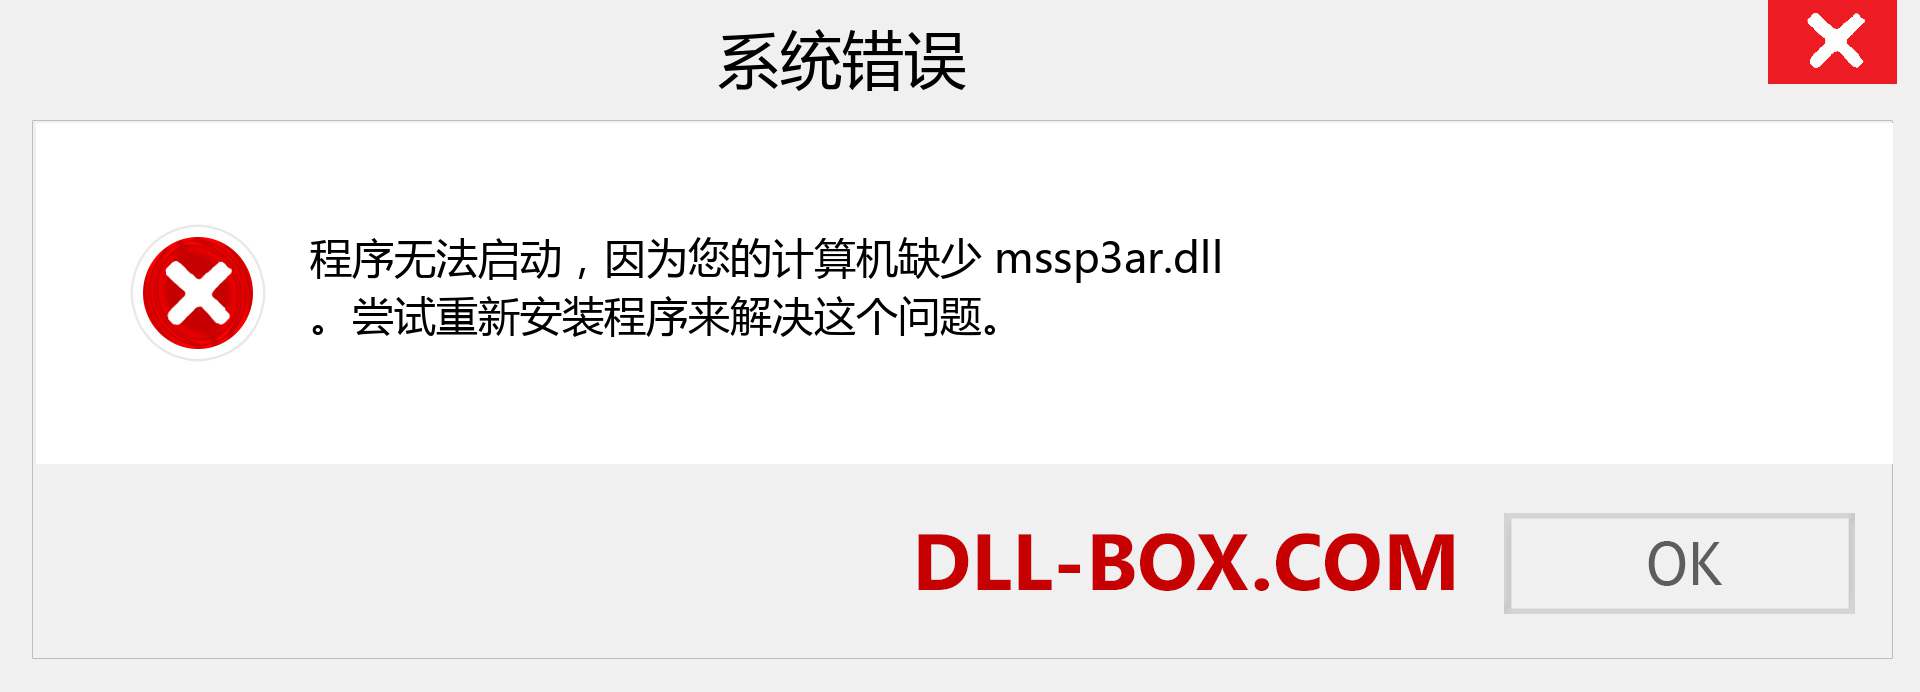 mssp3ar.dll 文件丢失？。 适用于 Windows 7、8、10 的下载 - 修复 Windows、照片、图像上的 mssp3ar dll 丢失错误